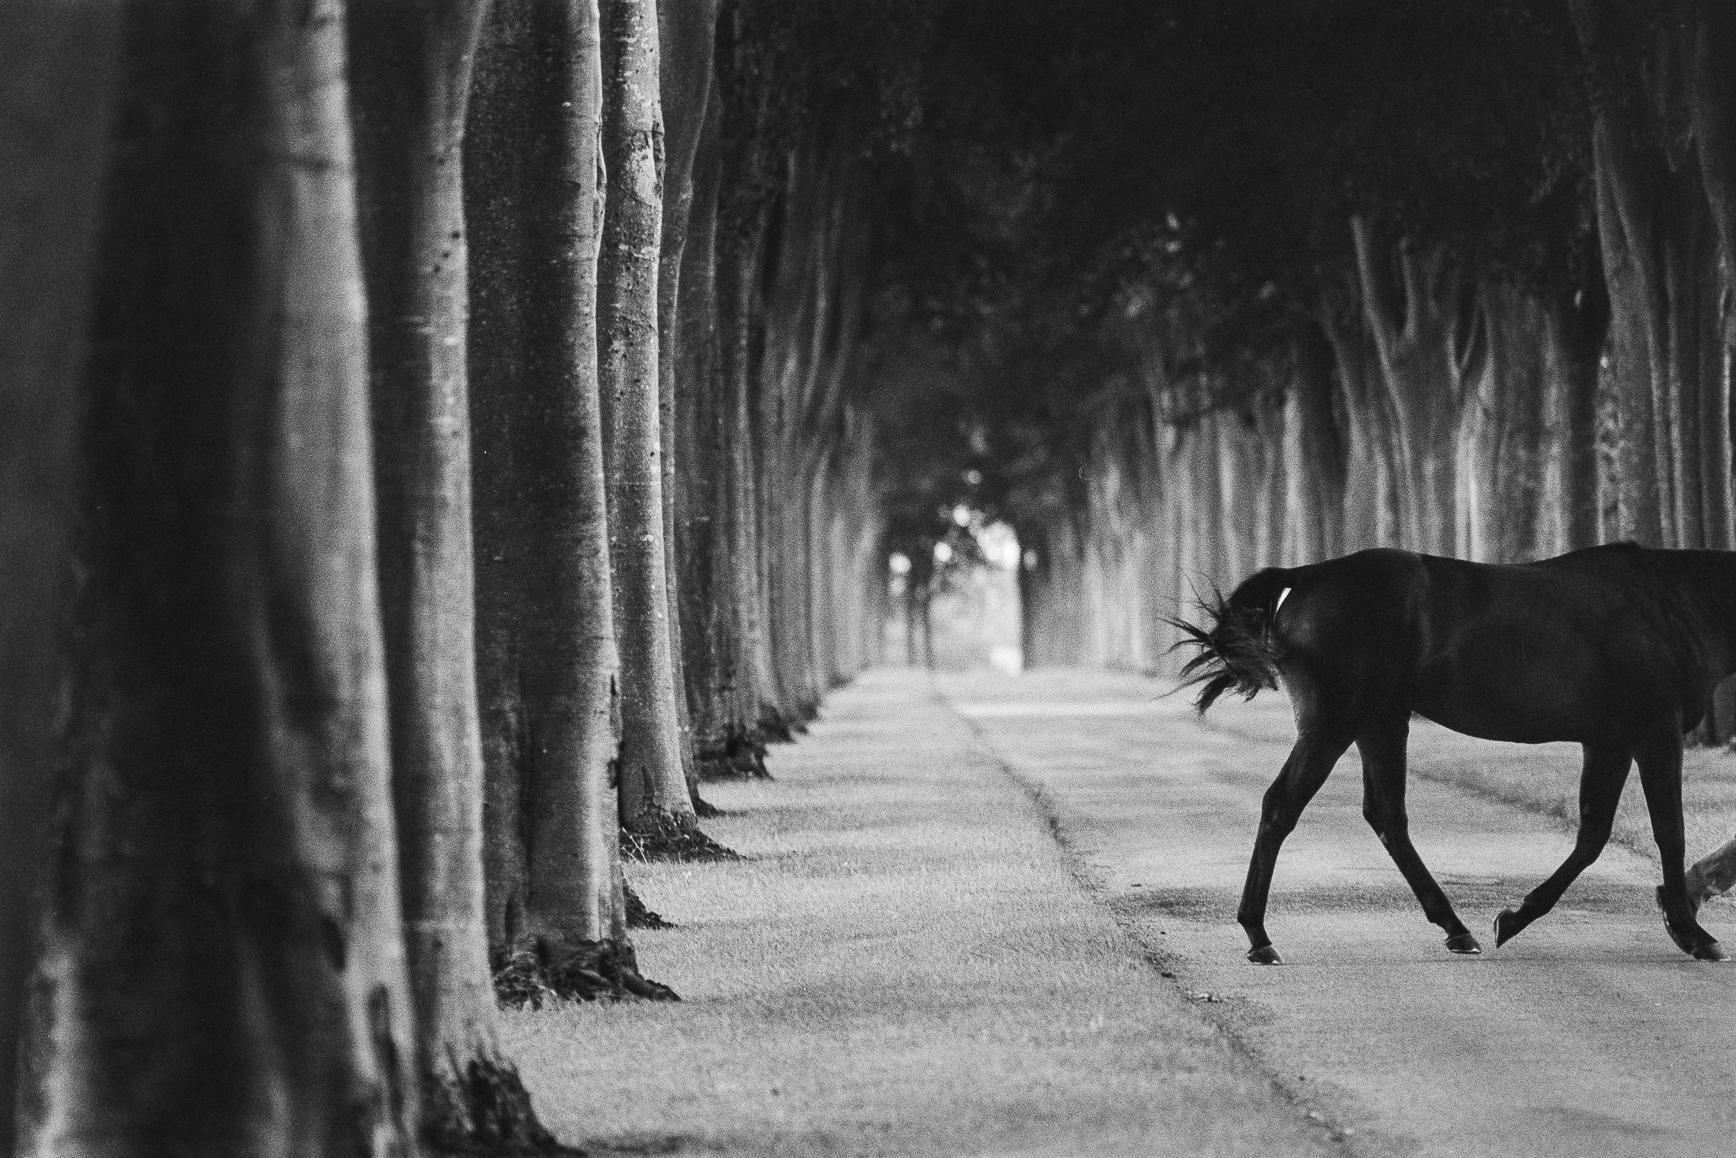 John Reardon Black and White Photograph – Kabool, 'Avenue of Trees', Horse Exit, Schwarz-Weiß-Landschaft und ein Hengst